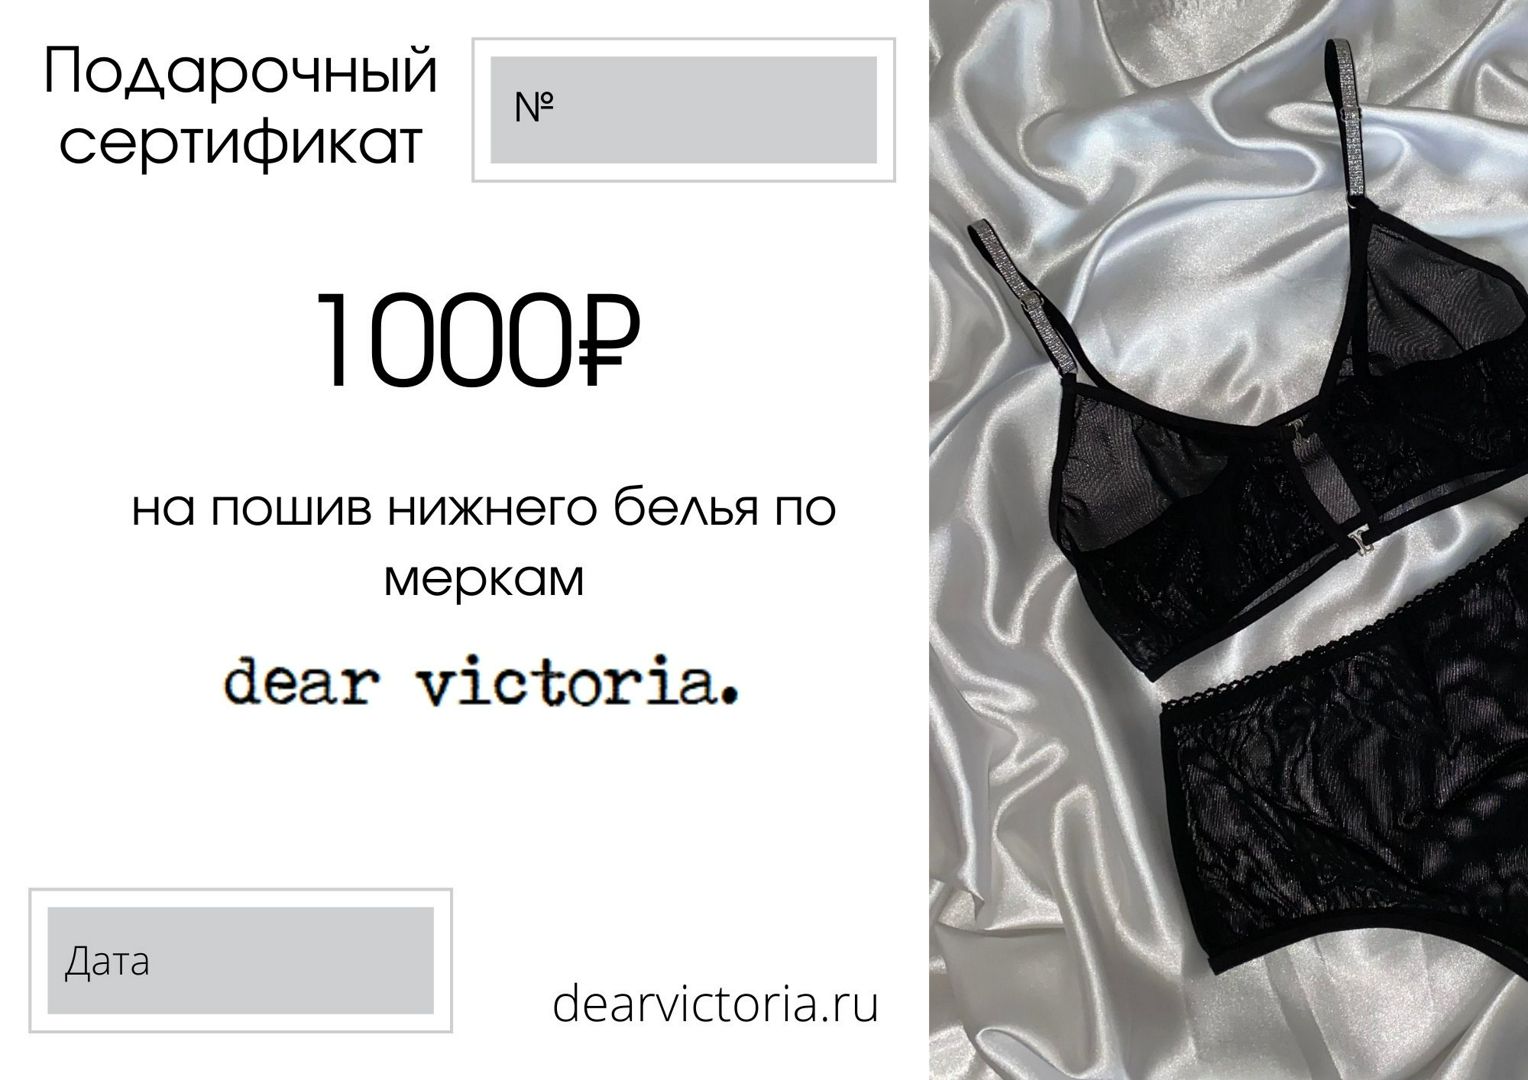 Подарочный сертификат на пошив нижнего белья на 1000руб